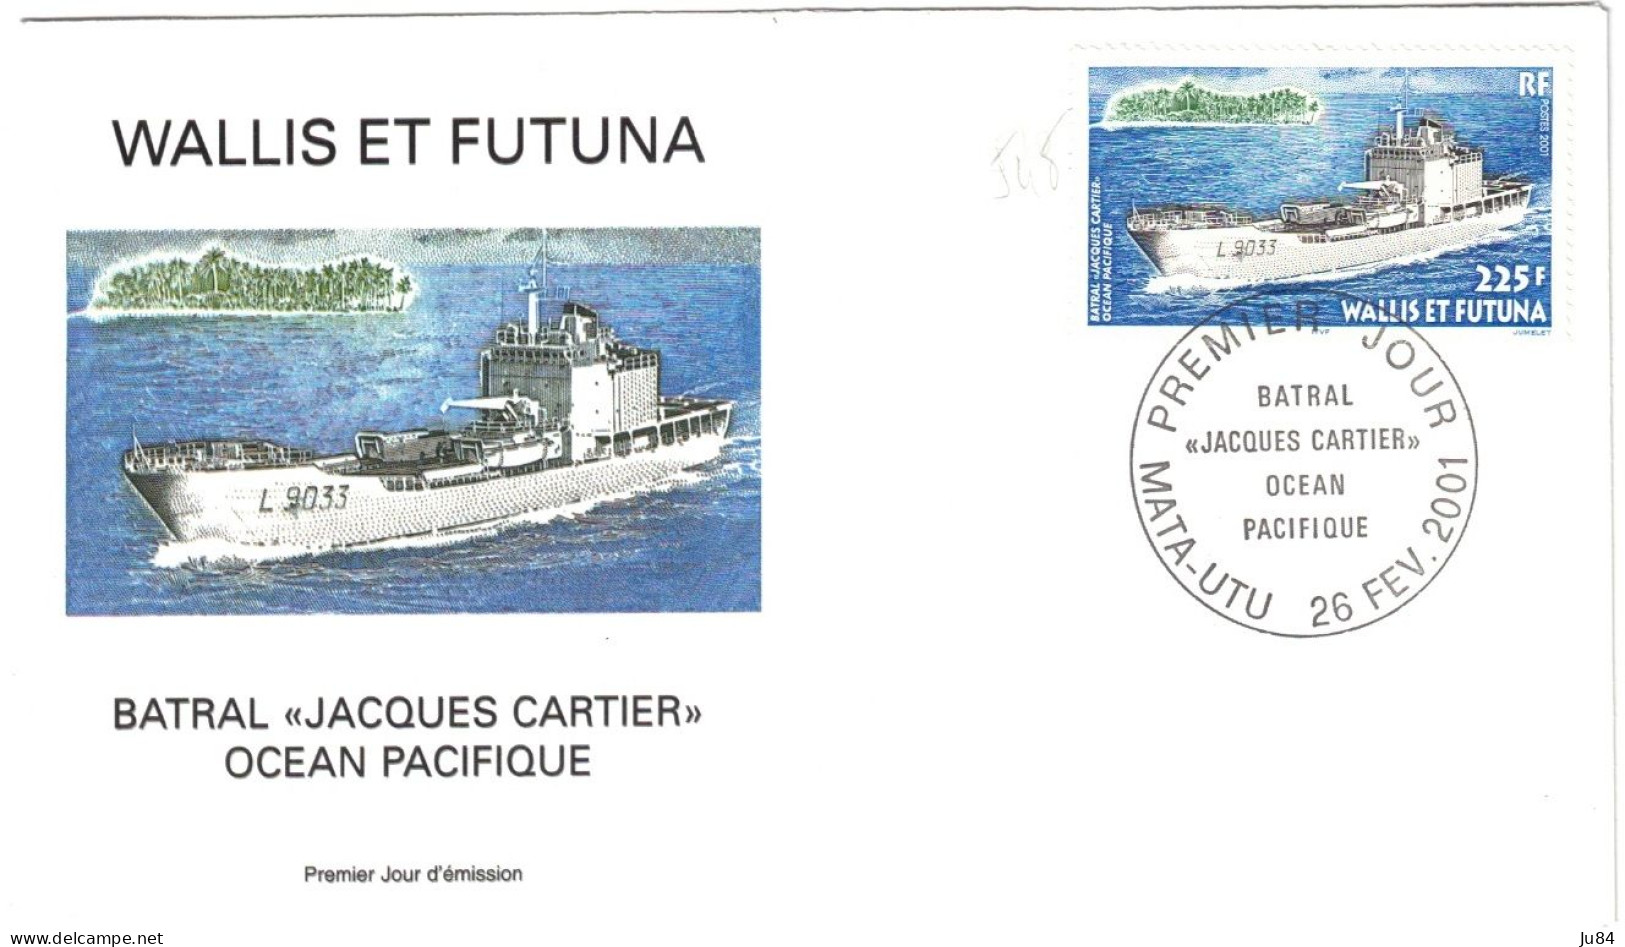 Océanie - Wallis Et Futuna - Mata-Utu - Batral "Jacques Cartier" Océan Pacifique - 26 Février 2001 - Briefe U. Dokumente